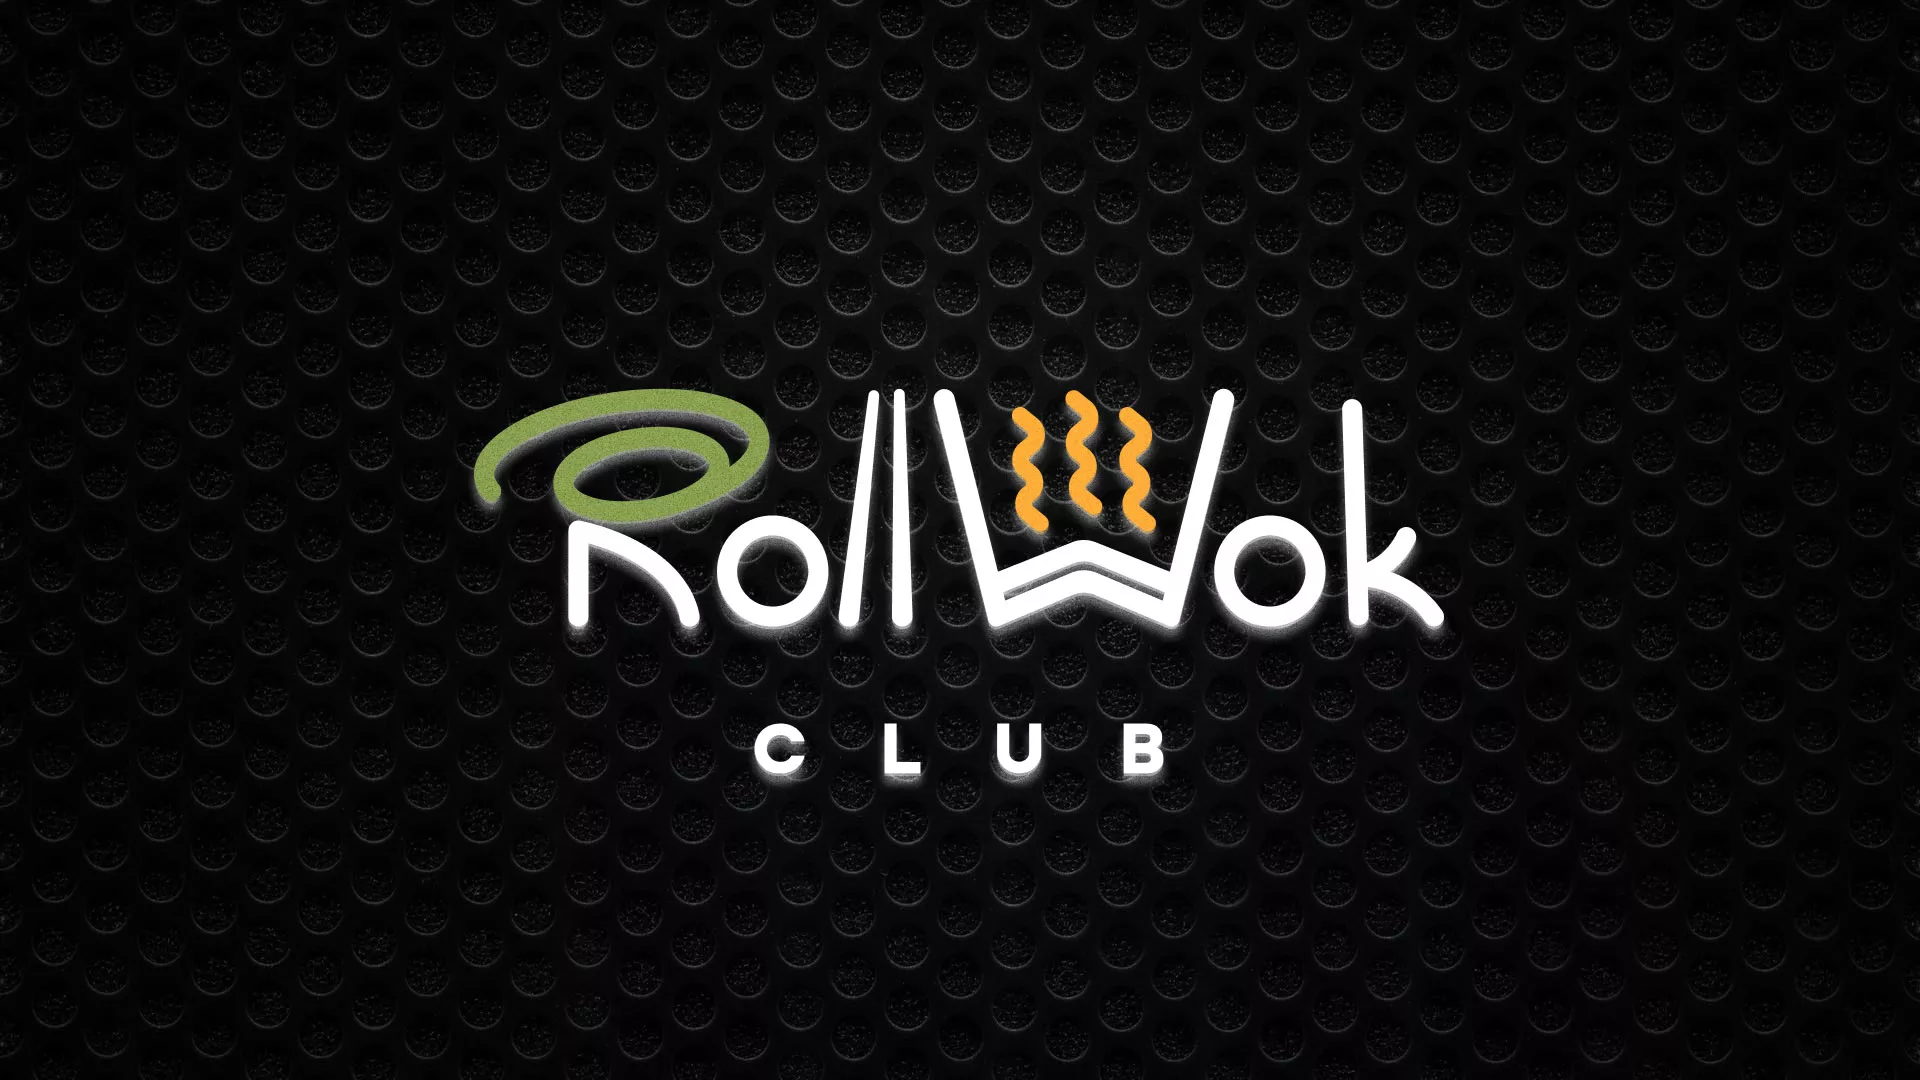 Брендирование торговых точек суши-бара «Roll Wok Club» в Чкаловском